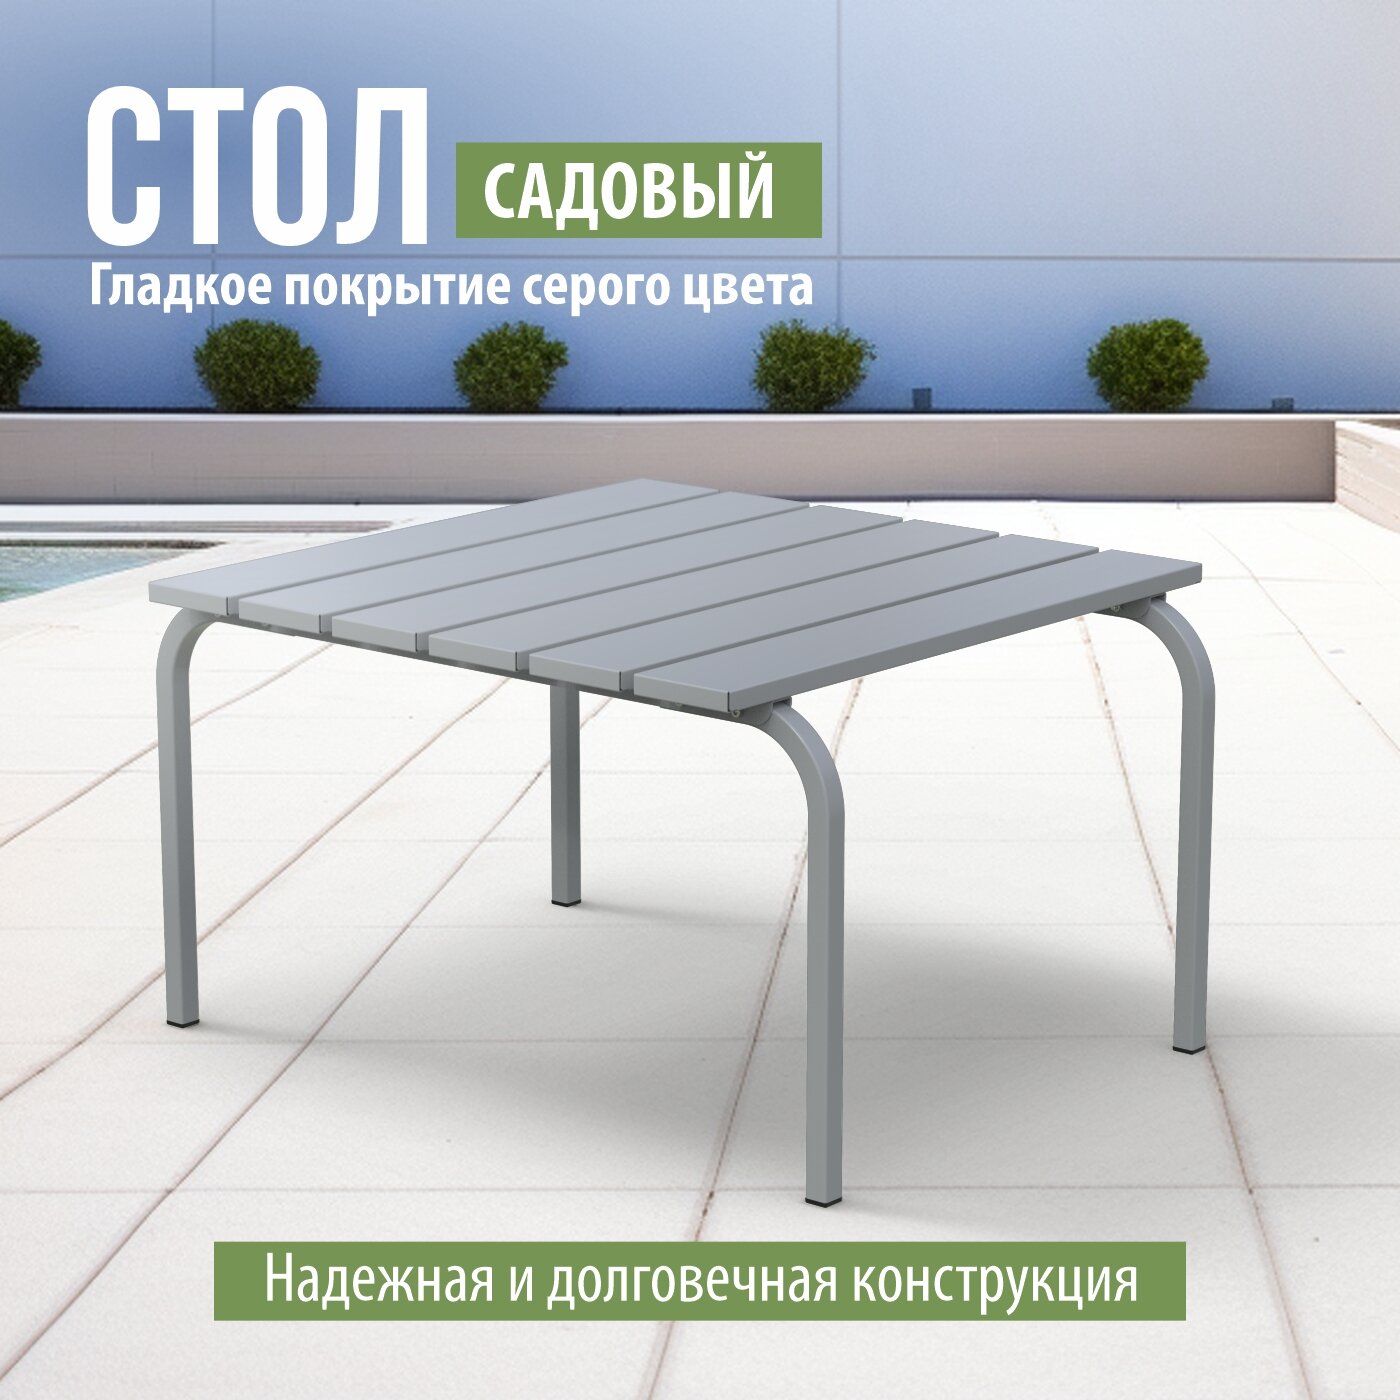 Разборный садовый стол ARRIVO AR1007G 75x75 см, высота 60 см, серый, металлический/ для дачи, парка, частного дома